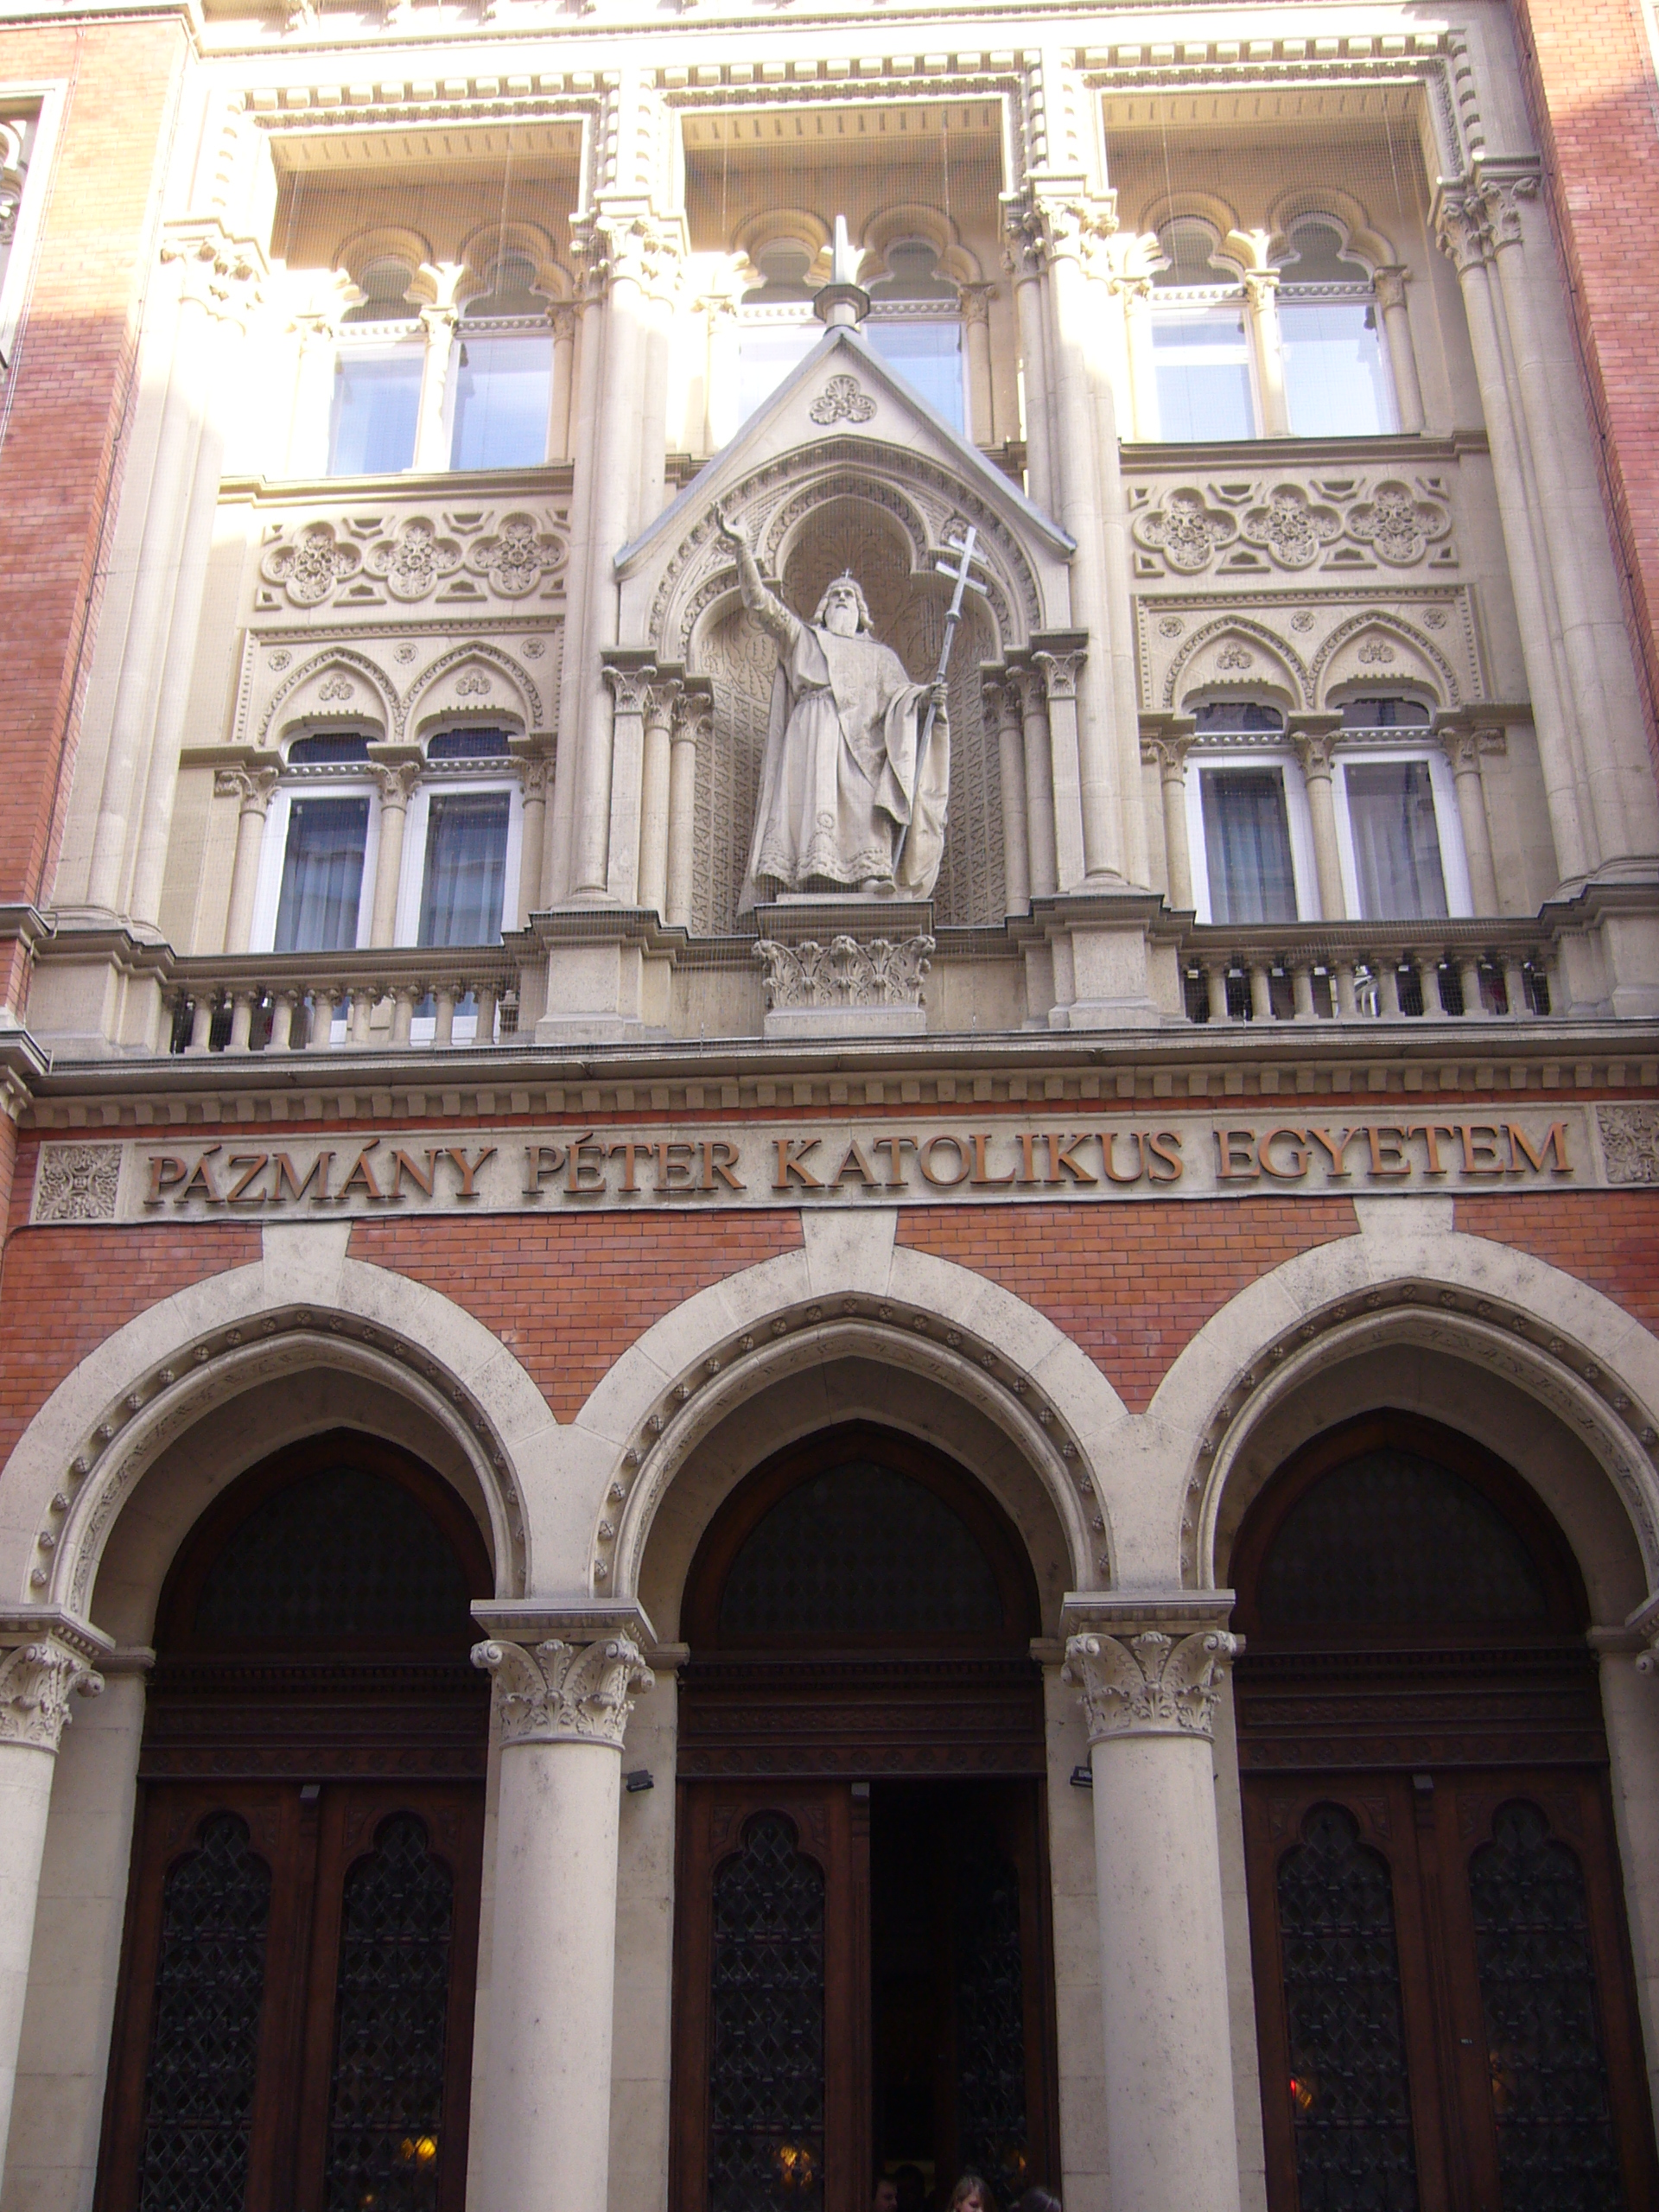 Eingangsbereich der Pazmany Peter Catholic University